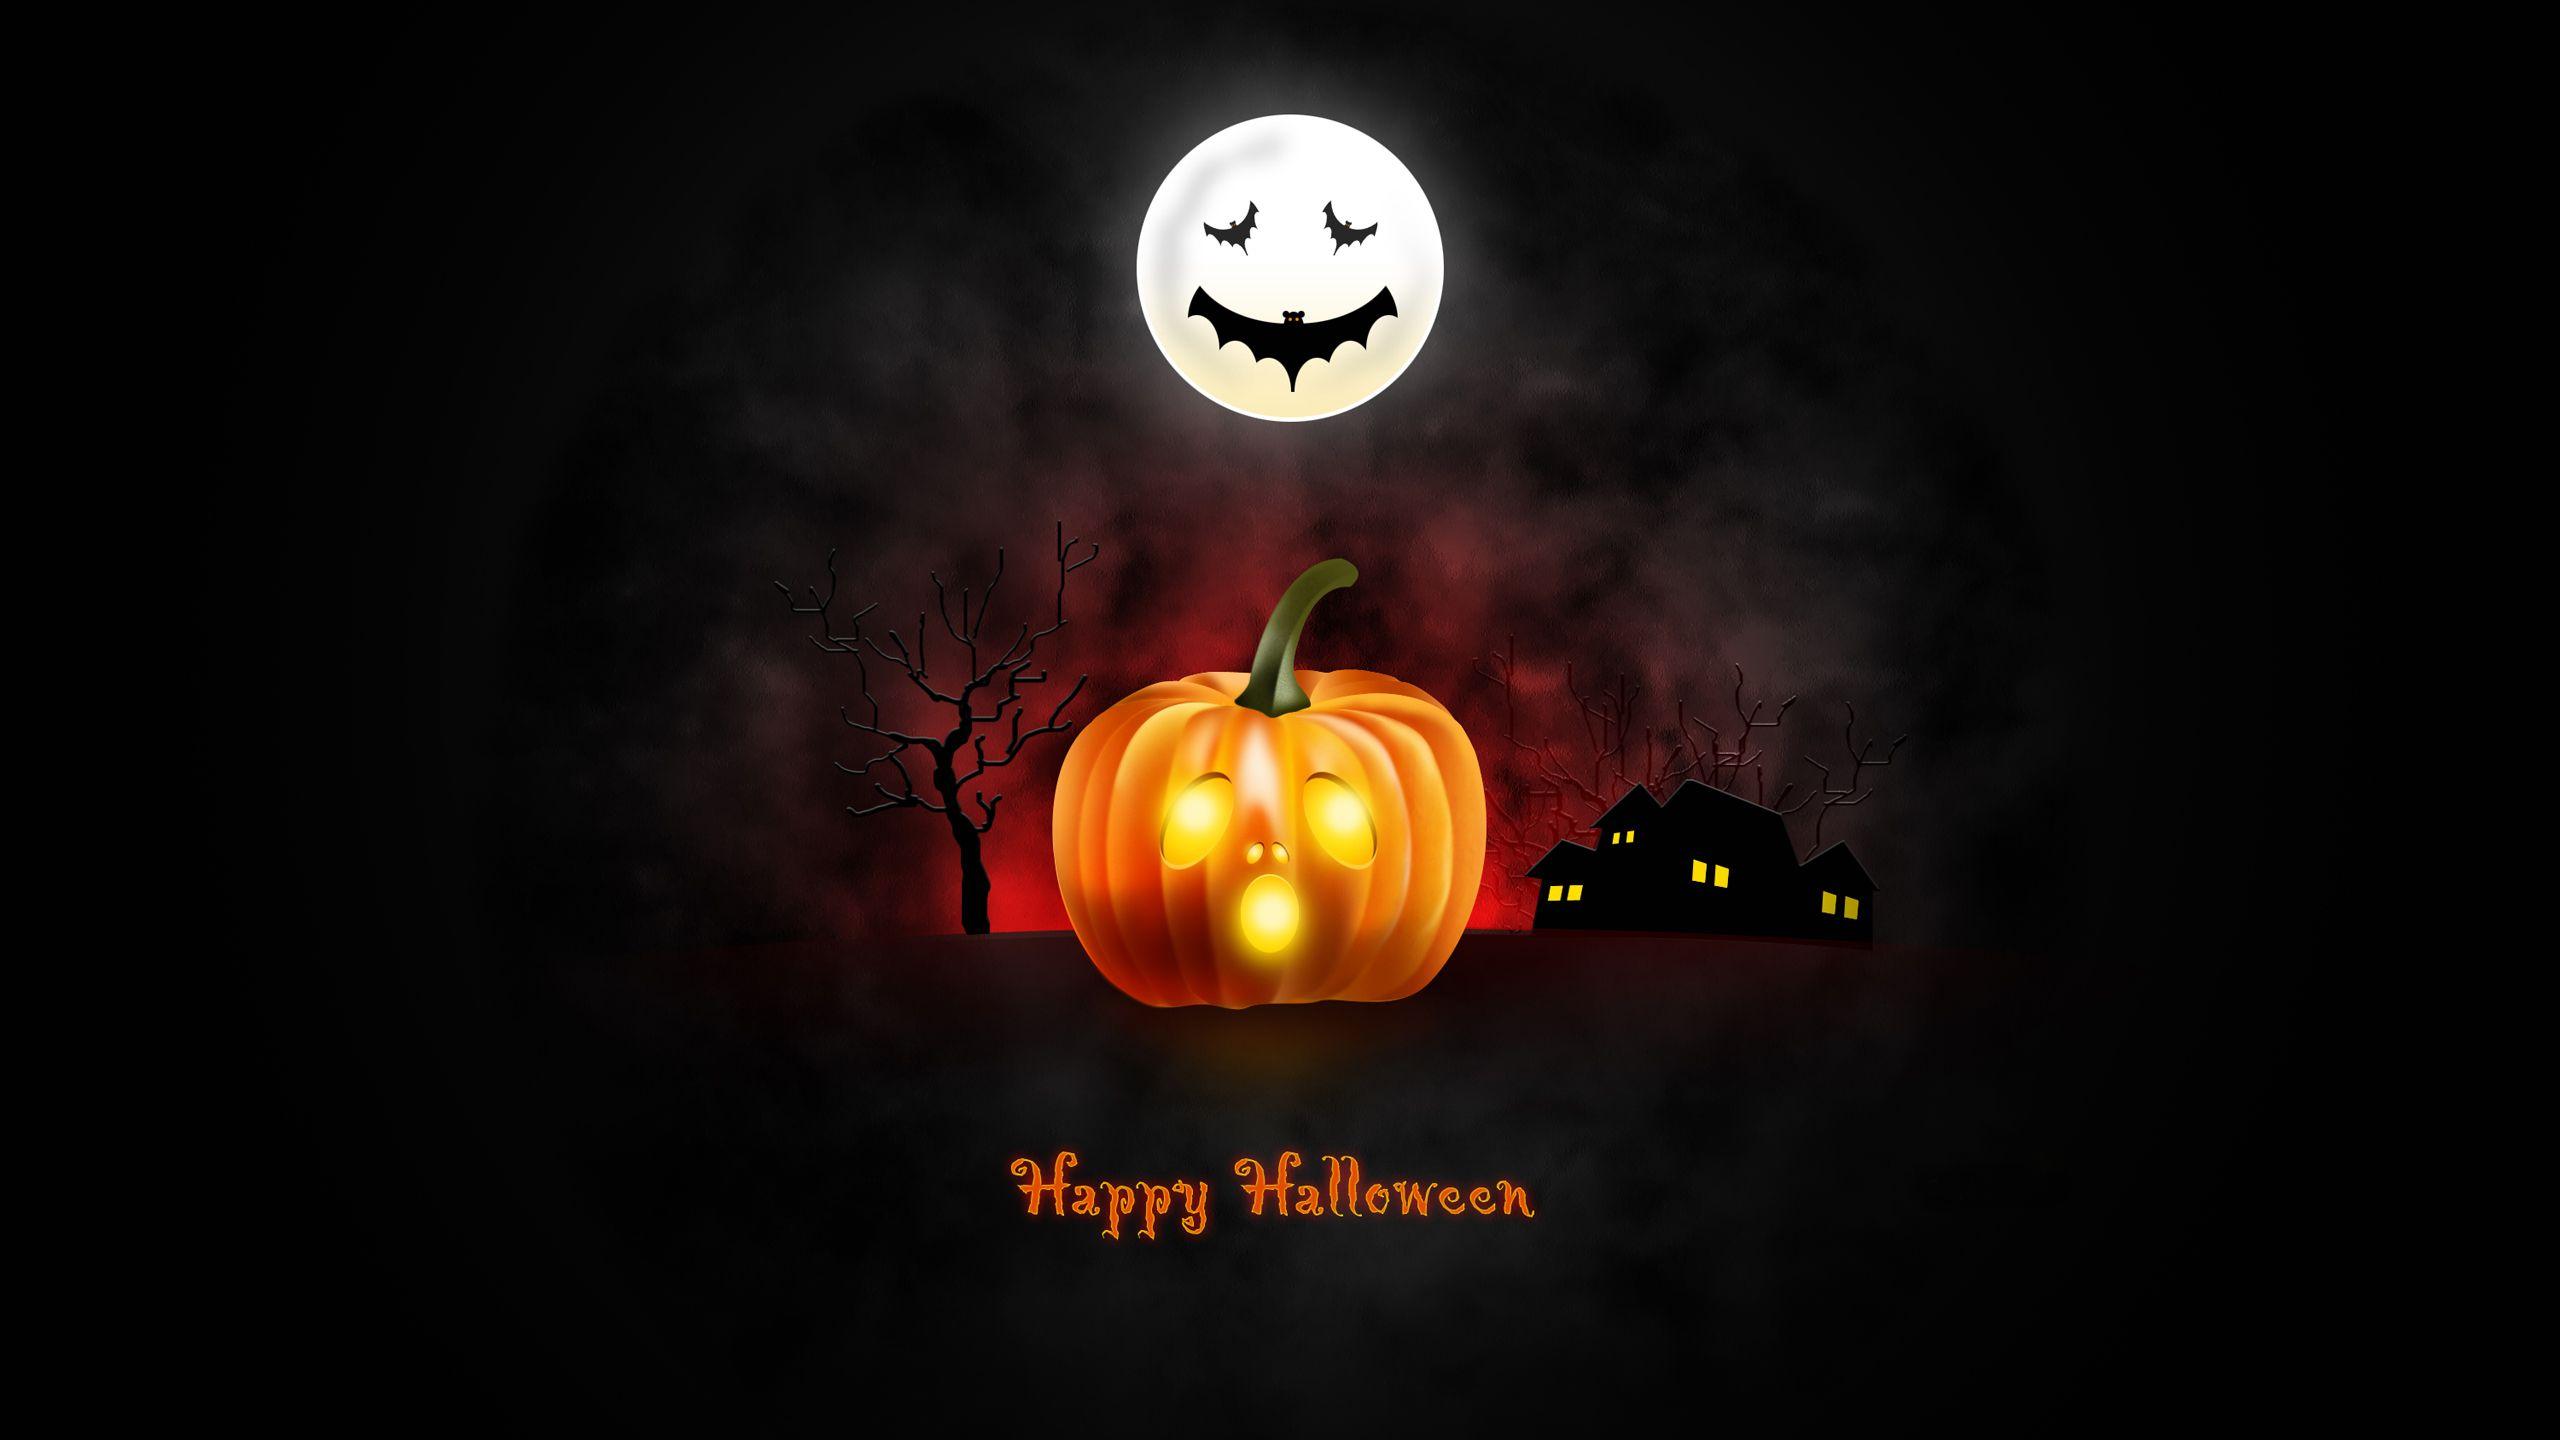 Happy Halloween HD Wallpaper For My Desktop HWZ005210